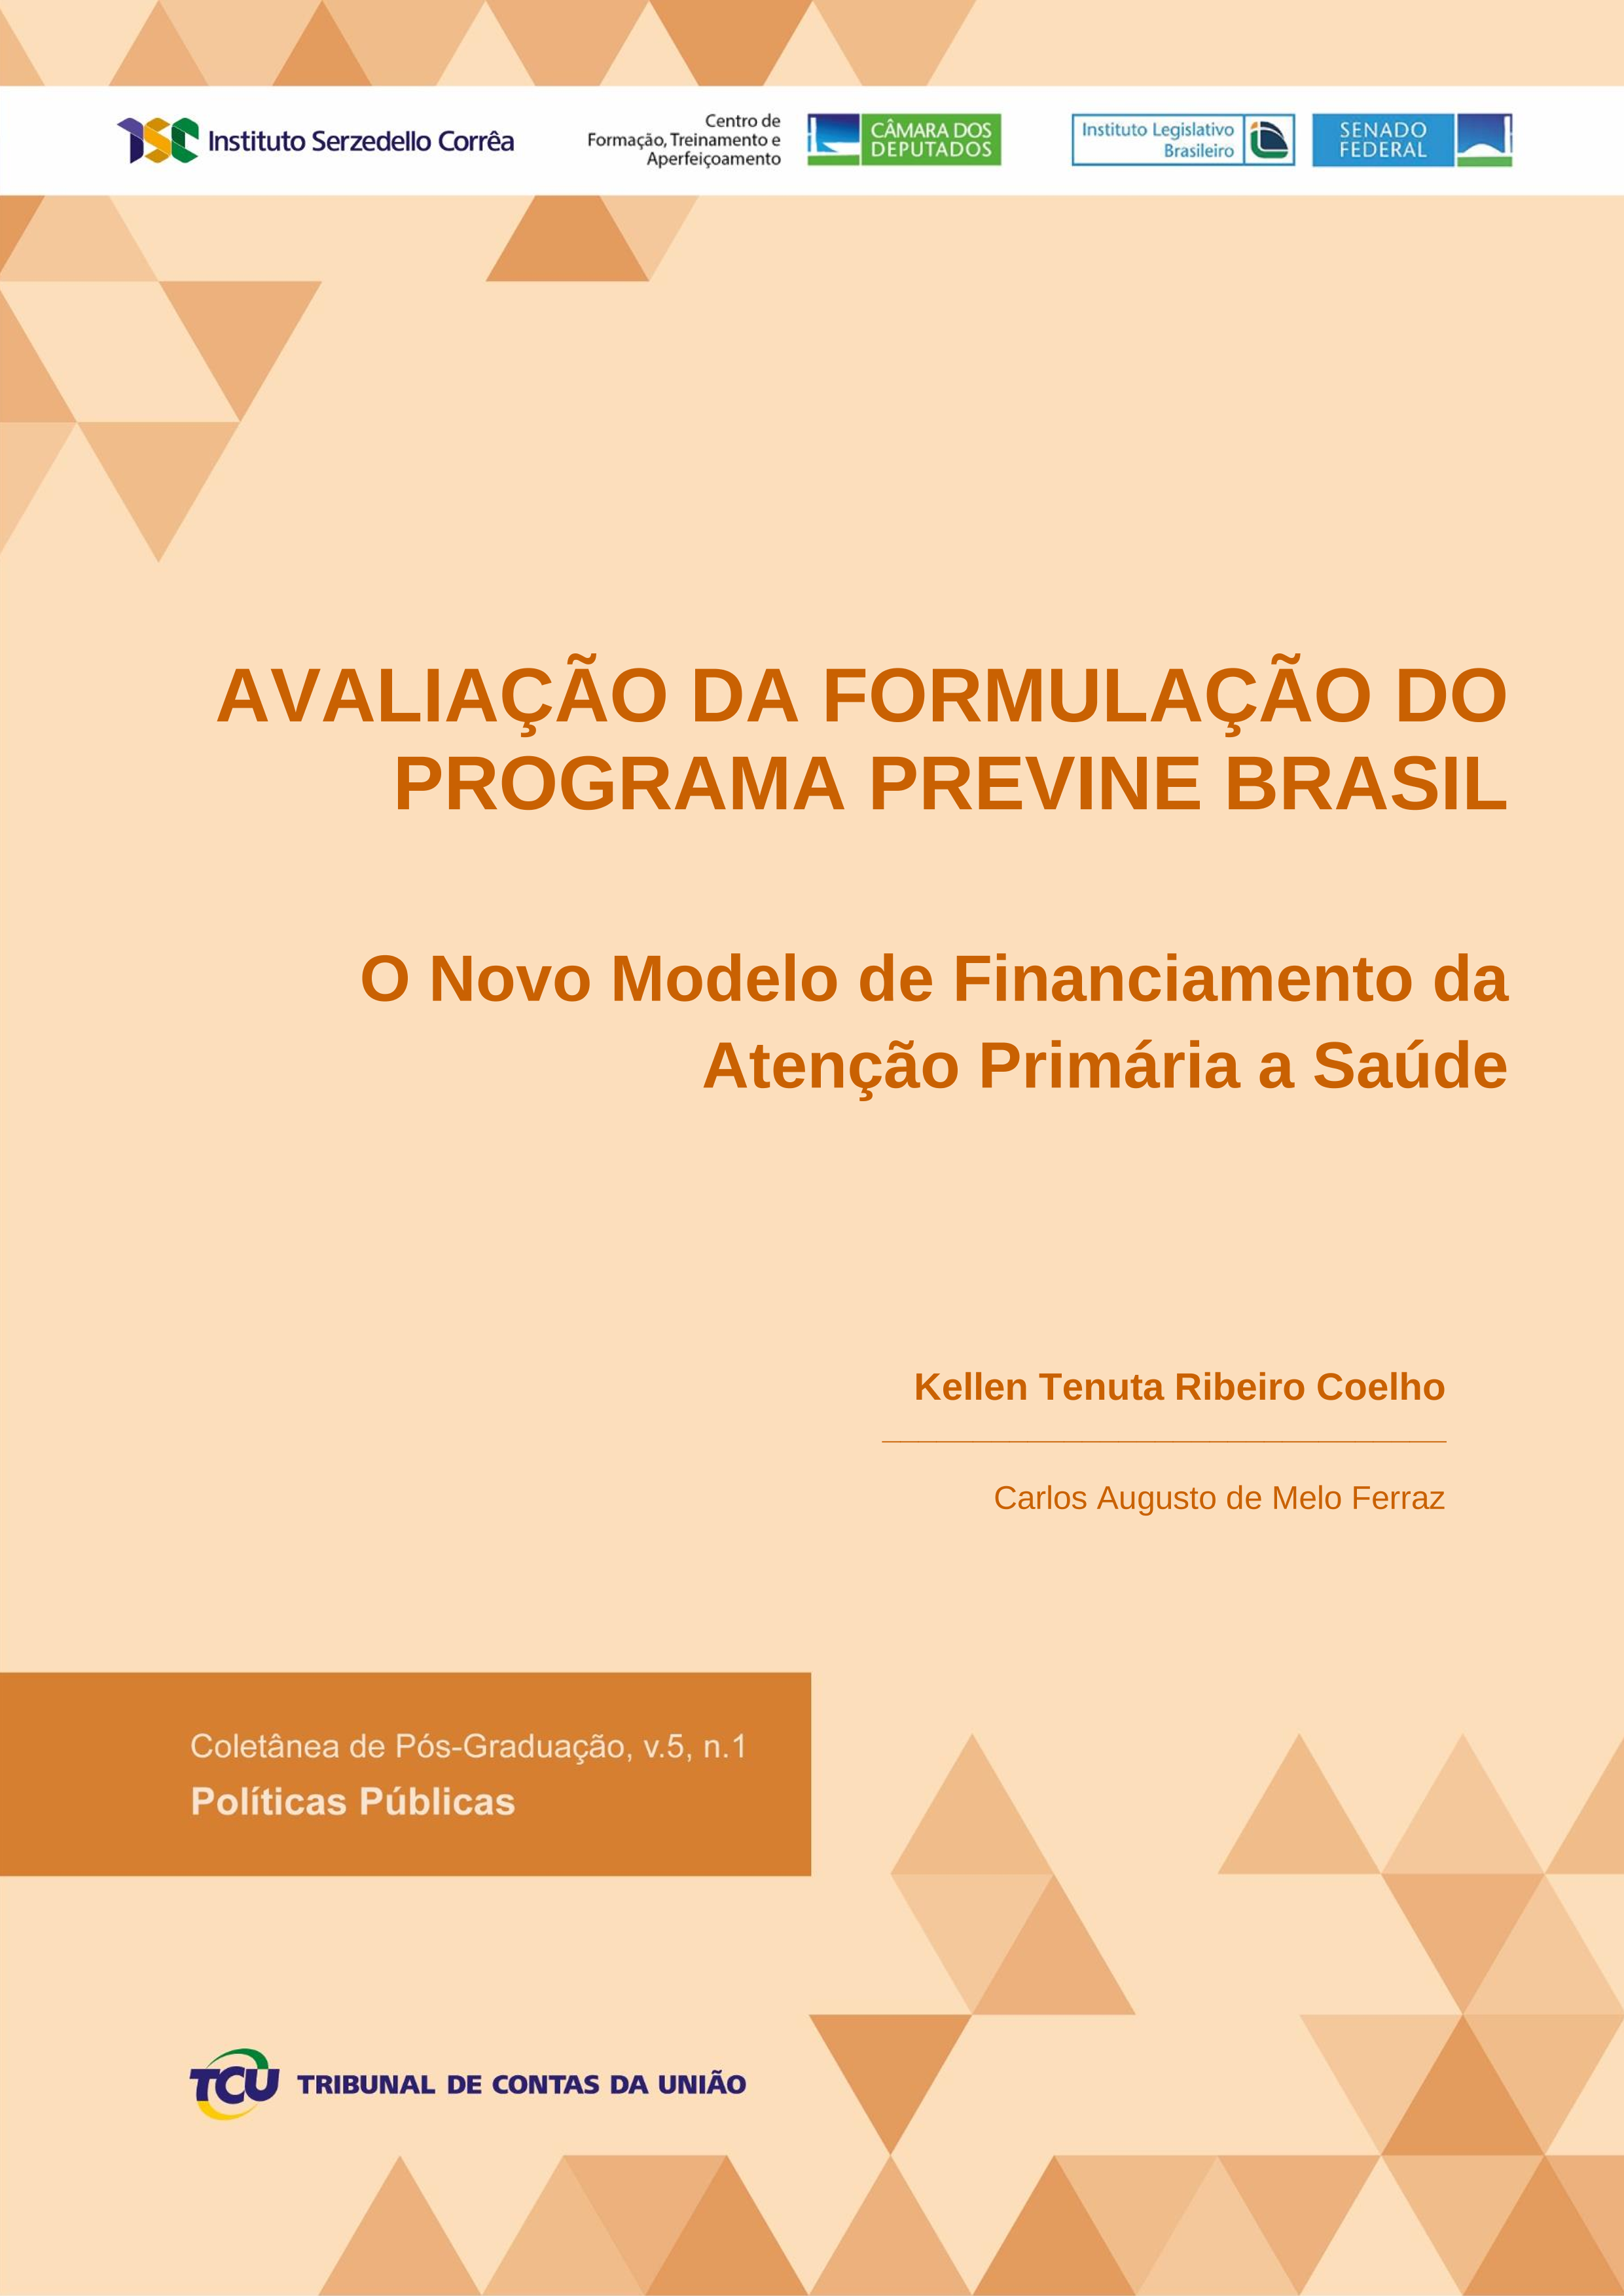 kellen versao final tcc - avaliacao da formulacao do programa previne brasil_4876_ revisado.png